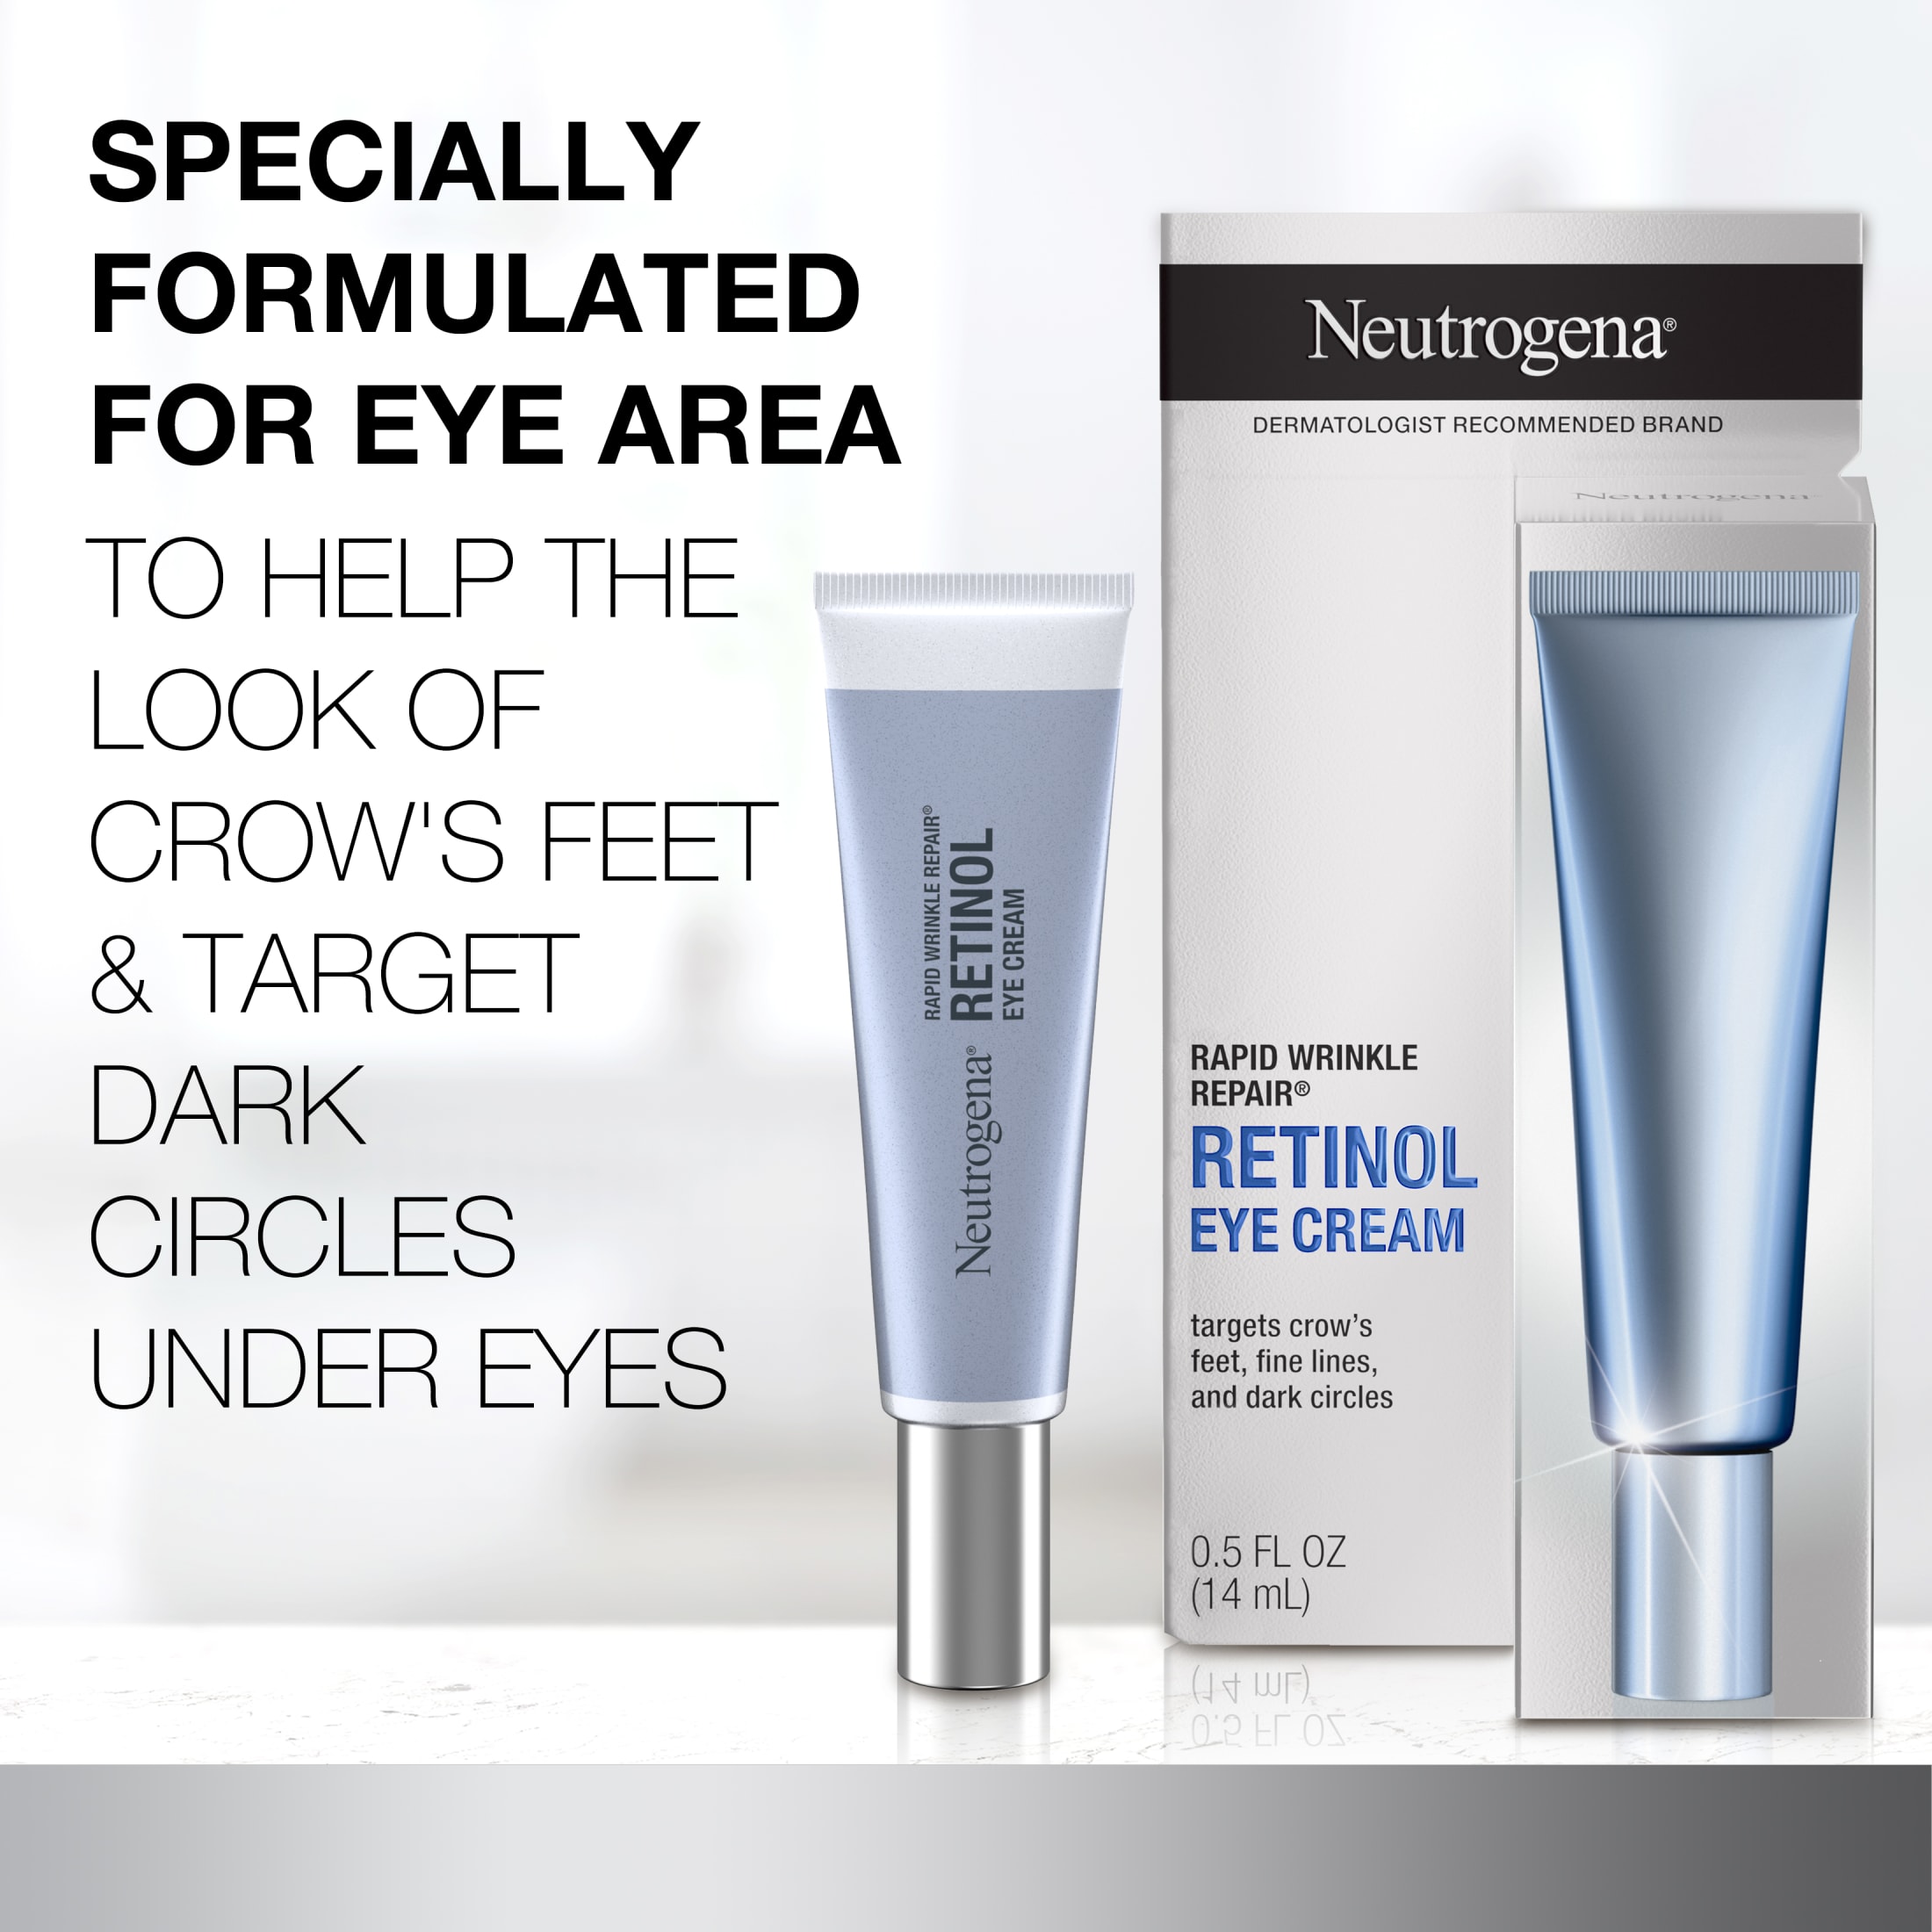 Neutrogena Rapid Wrinkle Repair Retinol Skin Care Eye Cream, 0.5 oz - image 3 of 10